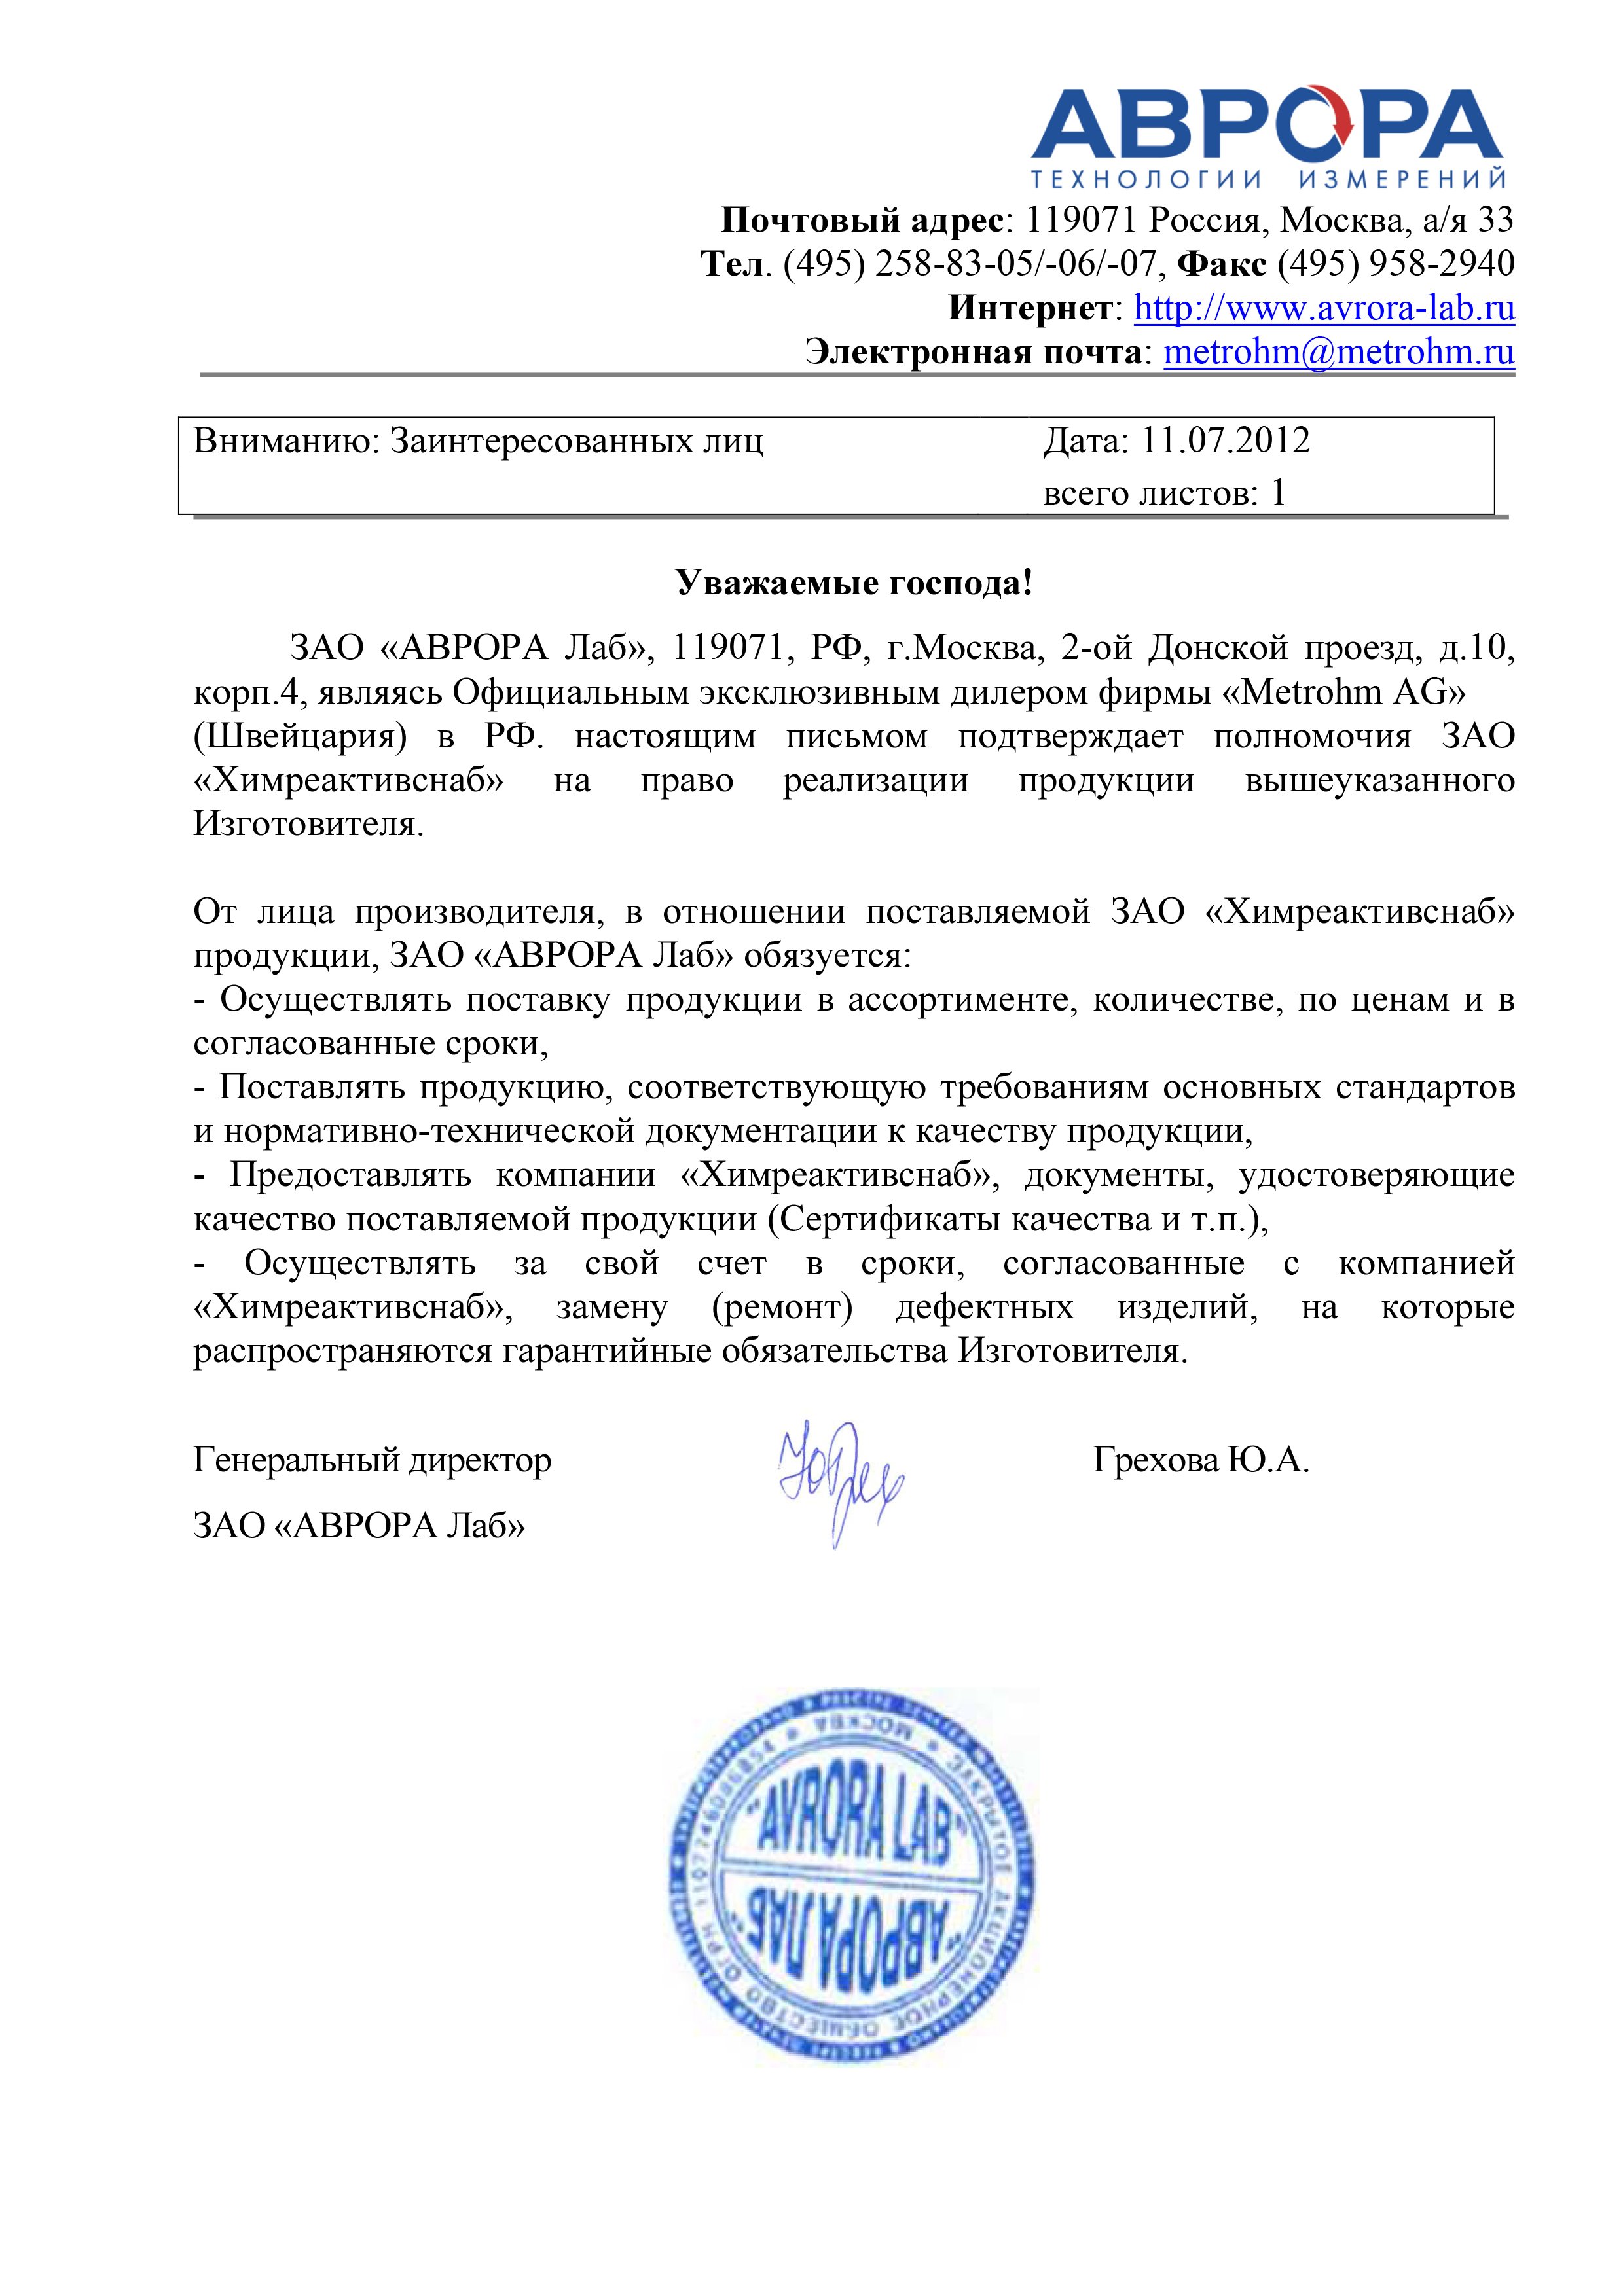 "Аврора Лаб" ЗАО, письмо дилера на реализацию оборудования фирмы "Metrohm AG"